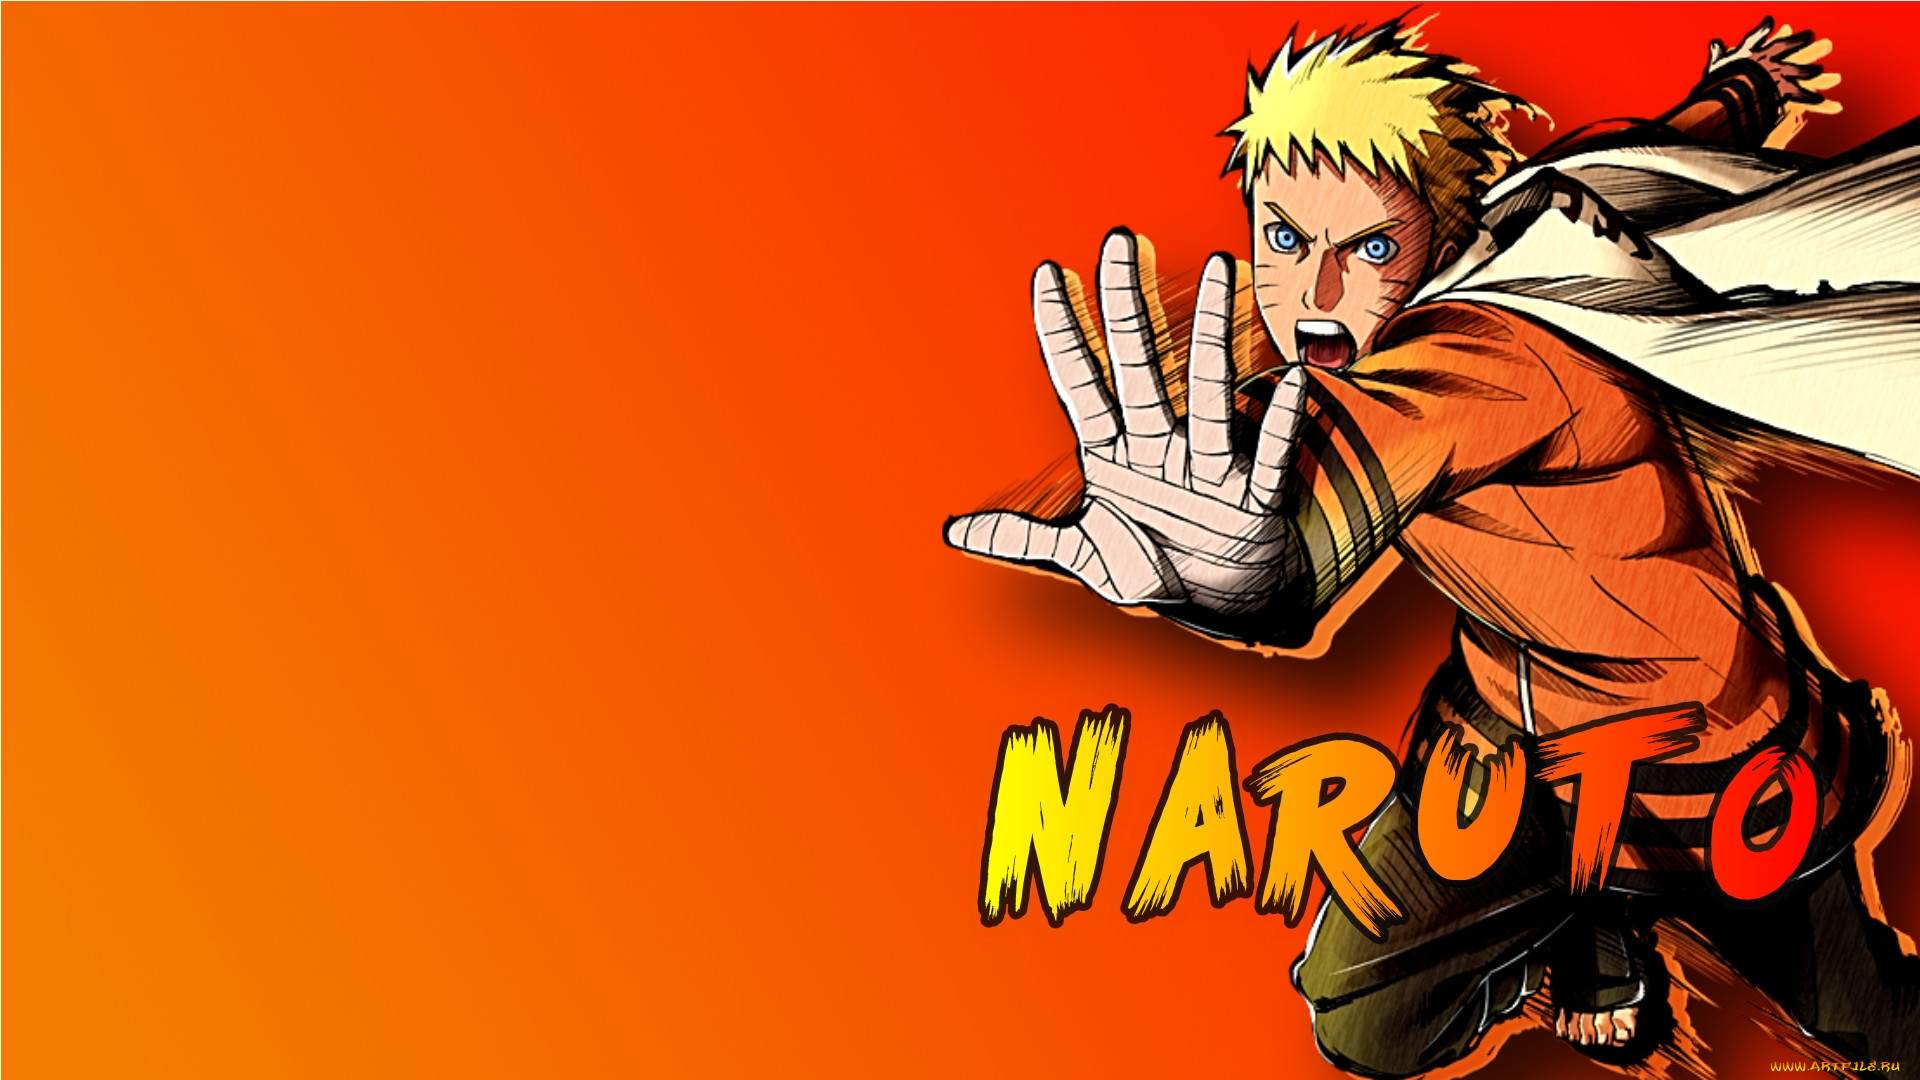 Обои Аниме Naruto, обои для рабочего стола, фотографии аниме, naruto, наруто  Обои для рабочего стола, скачать обои картинки заставки на рабочий стол.